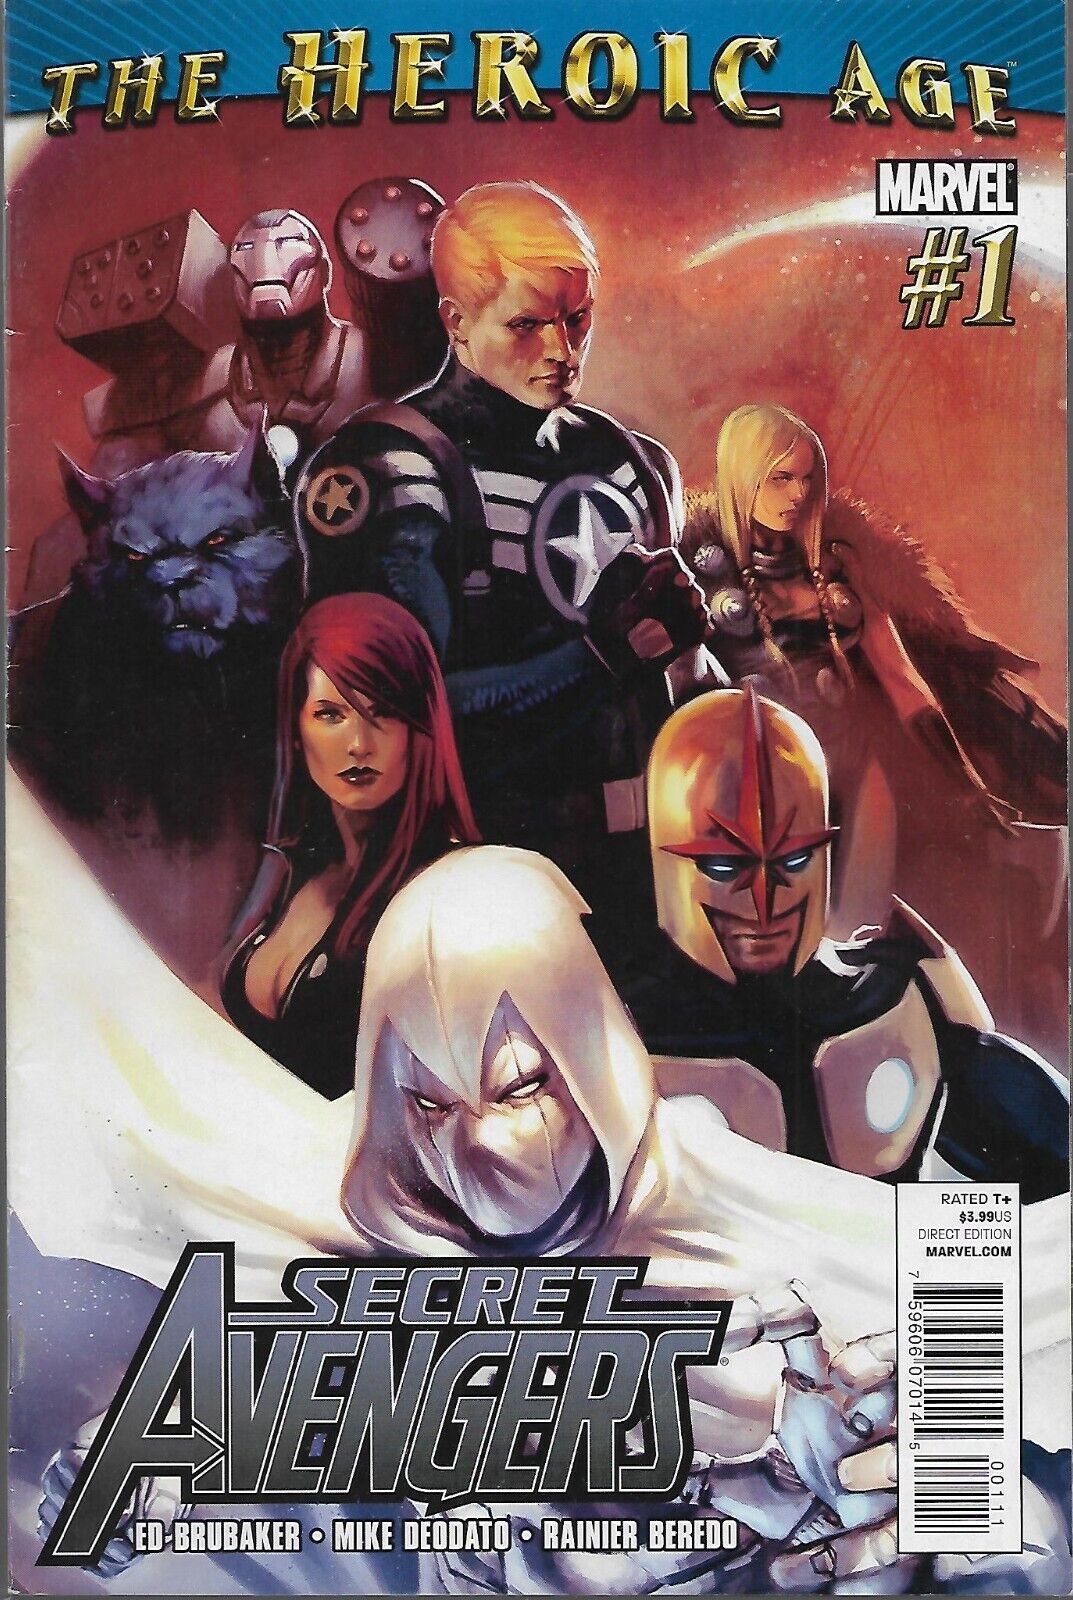 Marvel Comics’ Secret Avengers #1-5 from 2010.